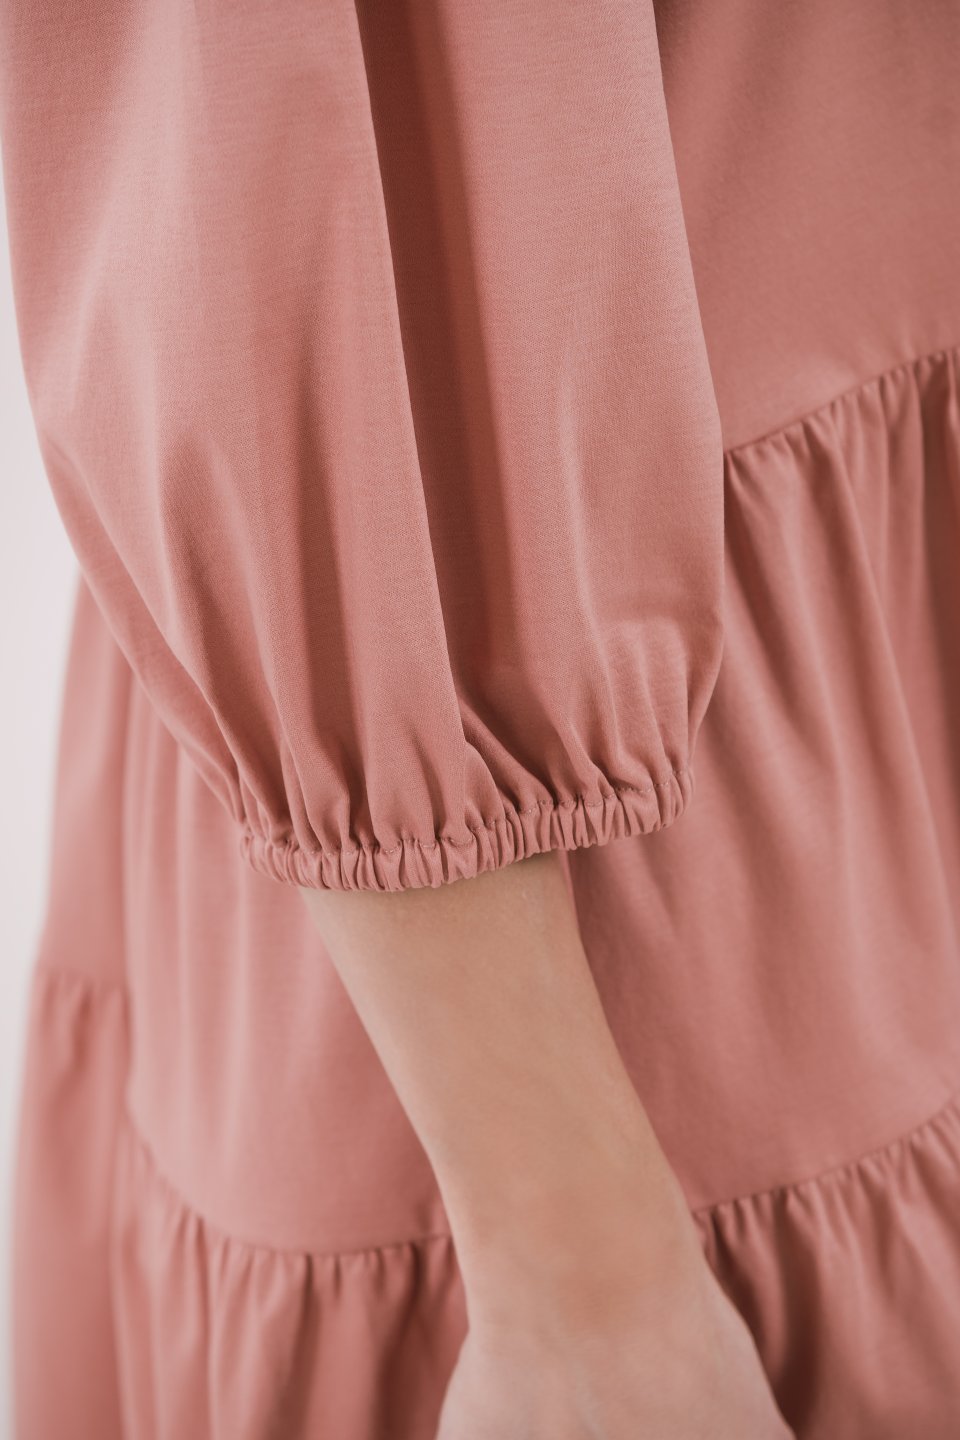 Women's Shirt Dress Be Lenka Essentials - Salmon Pink